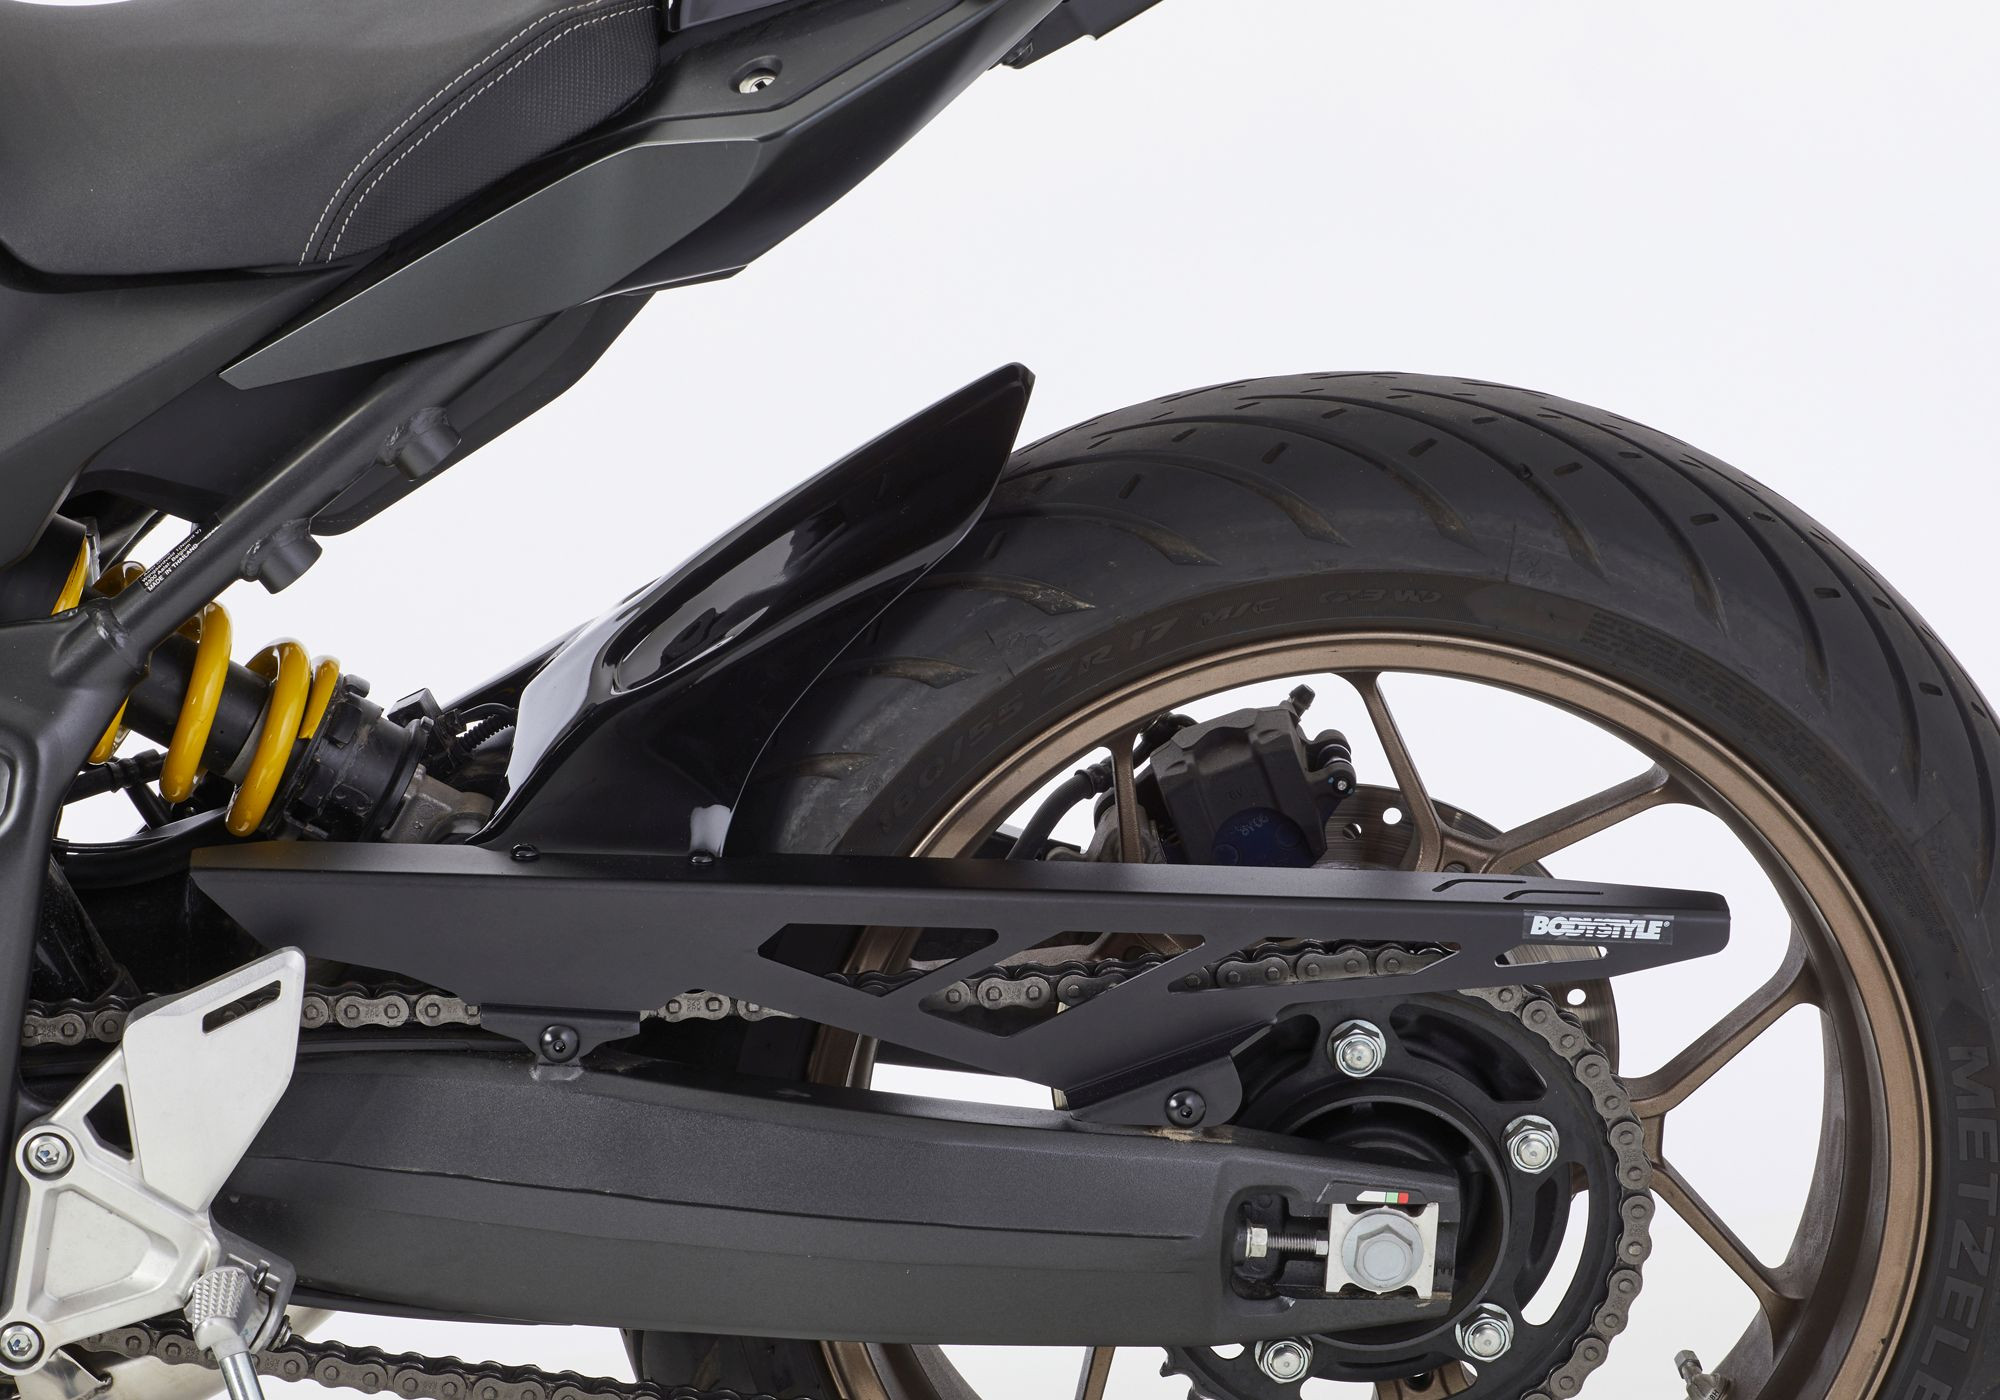 BODYSTYLE Sportsline Hinterradabdeckung schwarz Matt Gunpowder Black Metallic, NH436M ABE passt für Honda CBR650R, 2019-2021